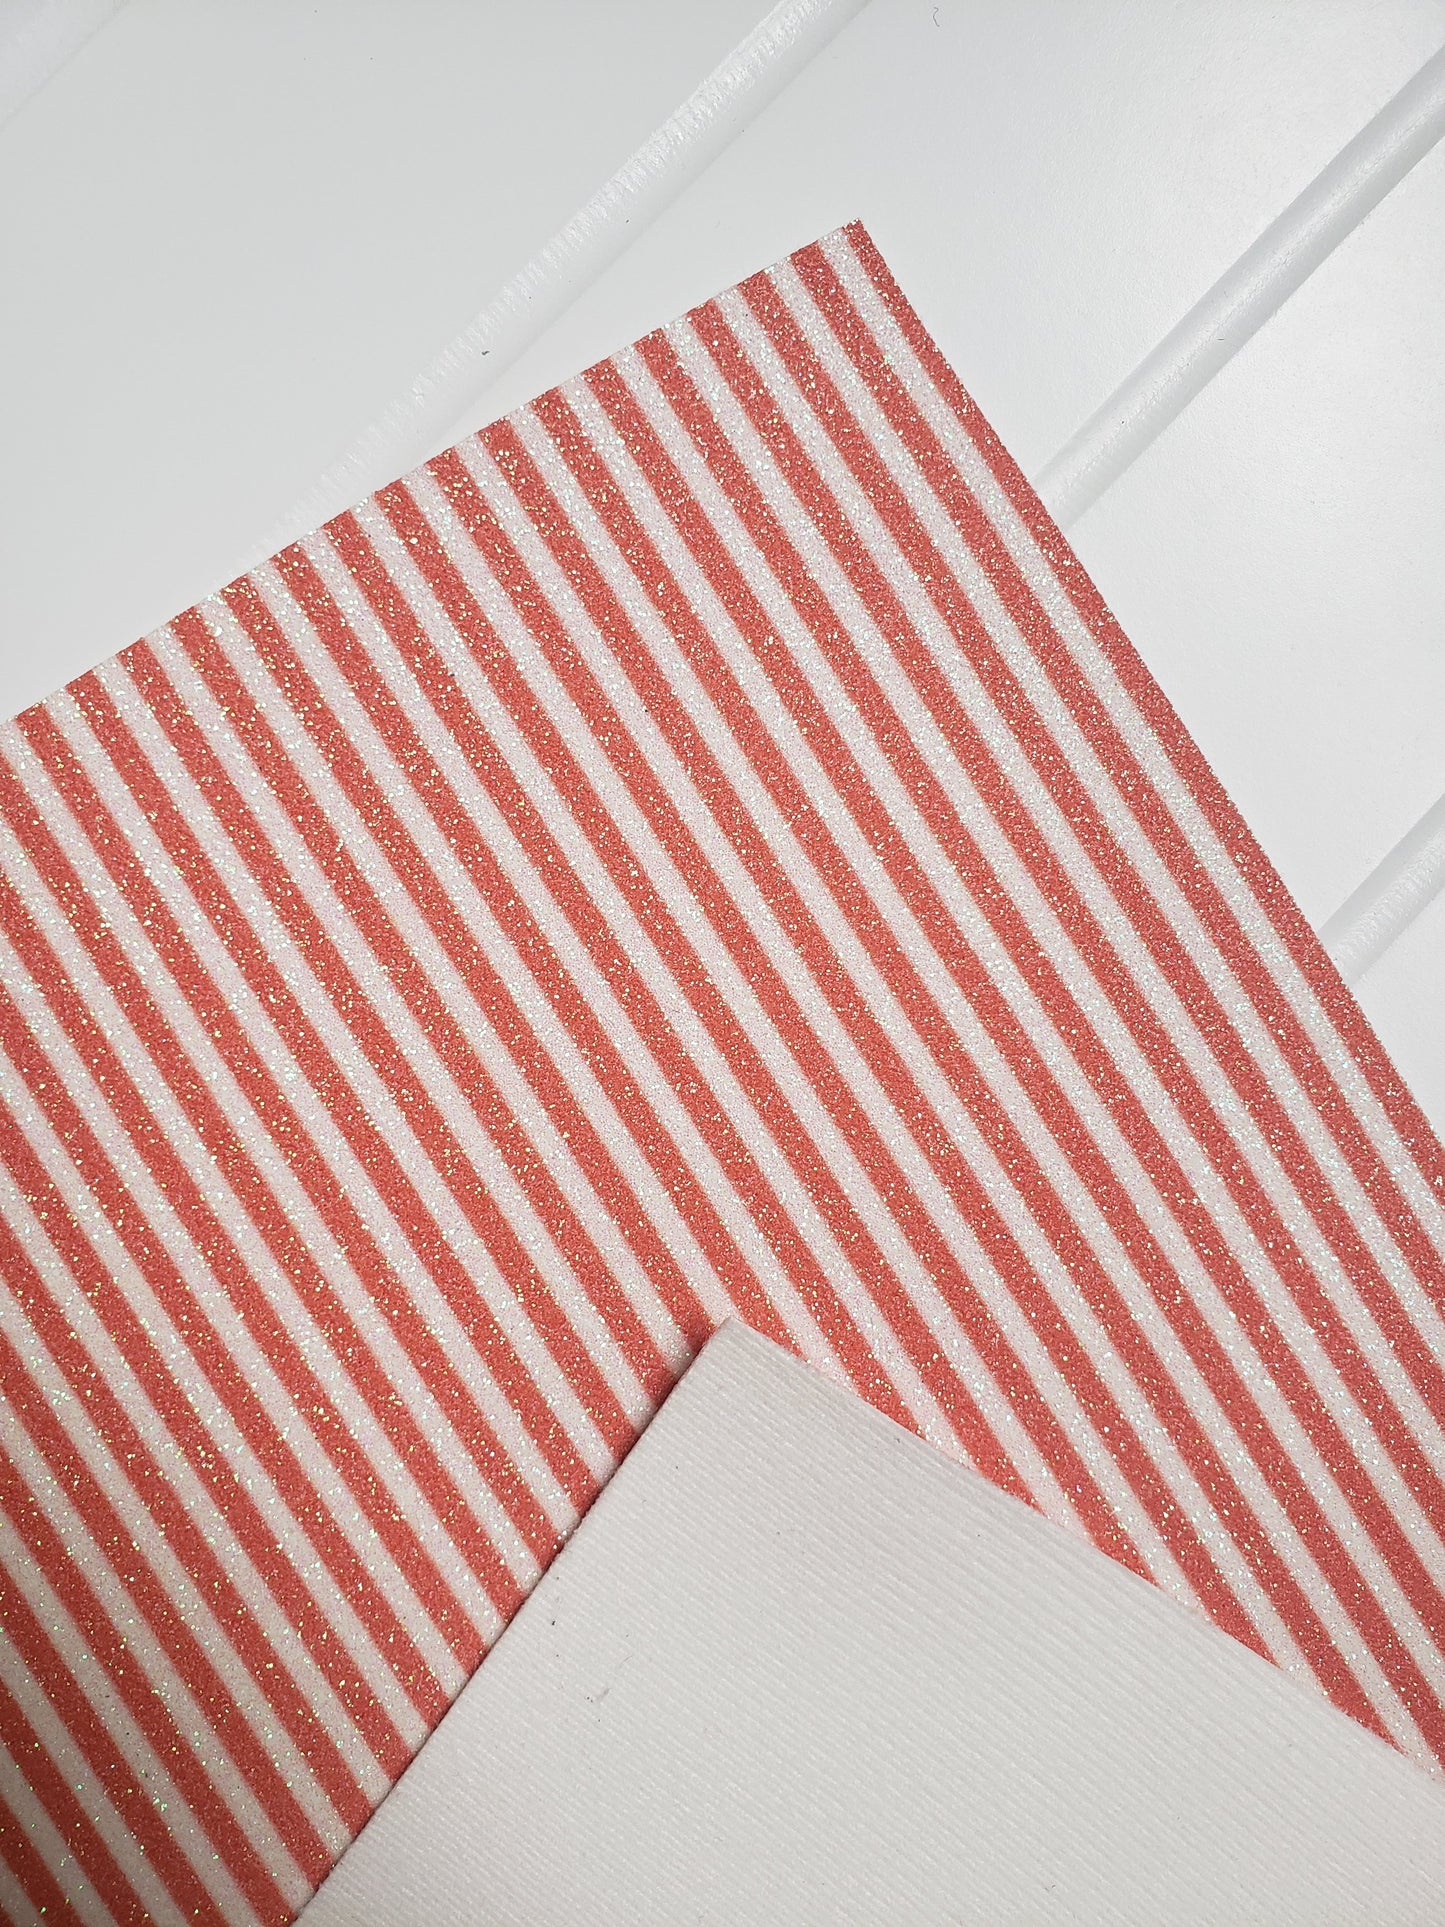 Stripe glitter fabric sheets (soft cotton backing)